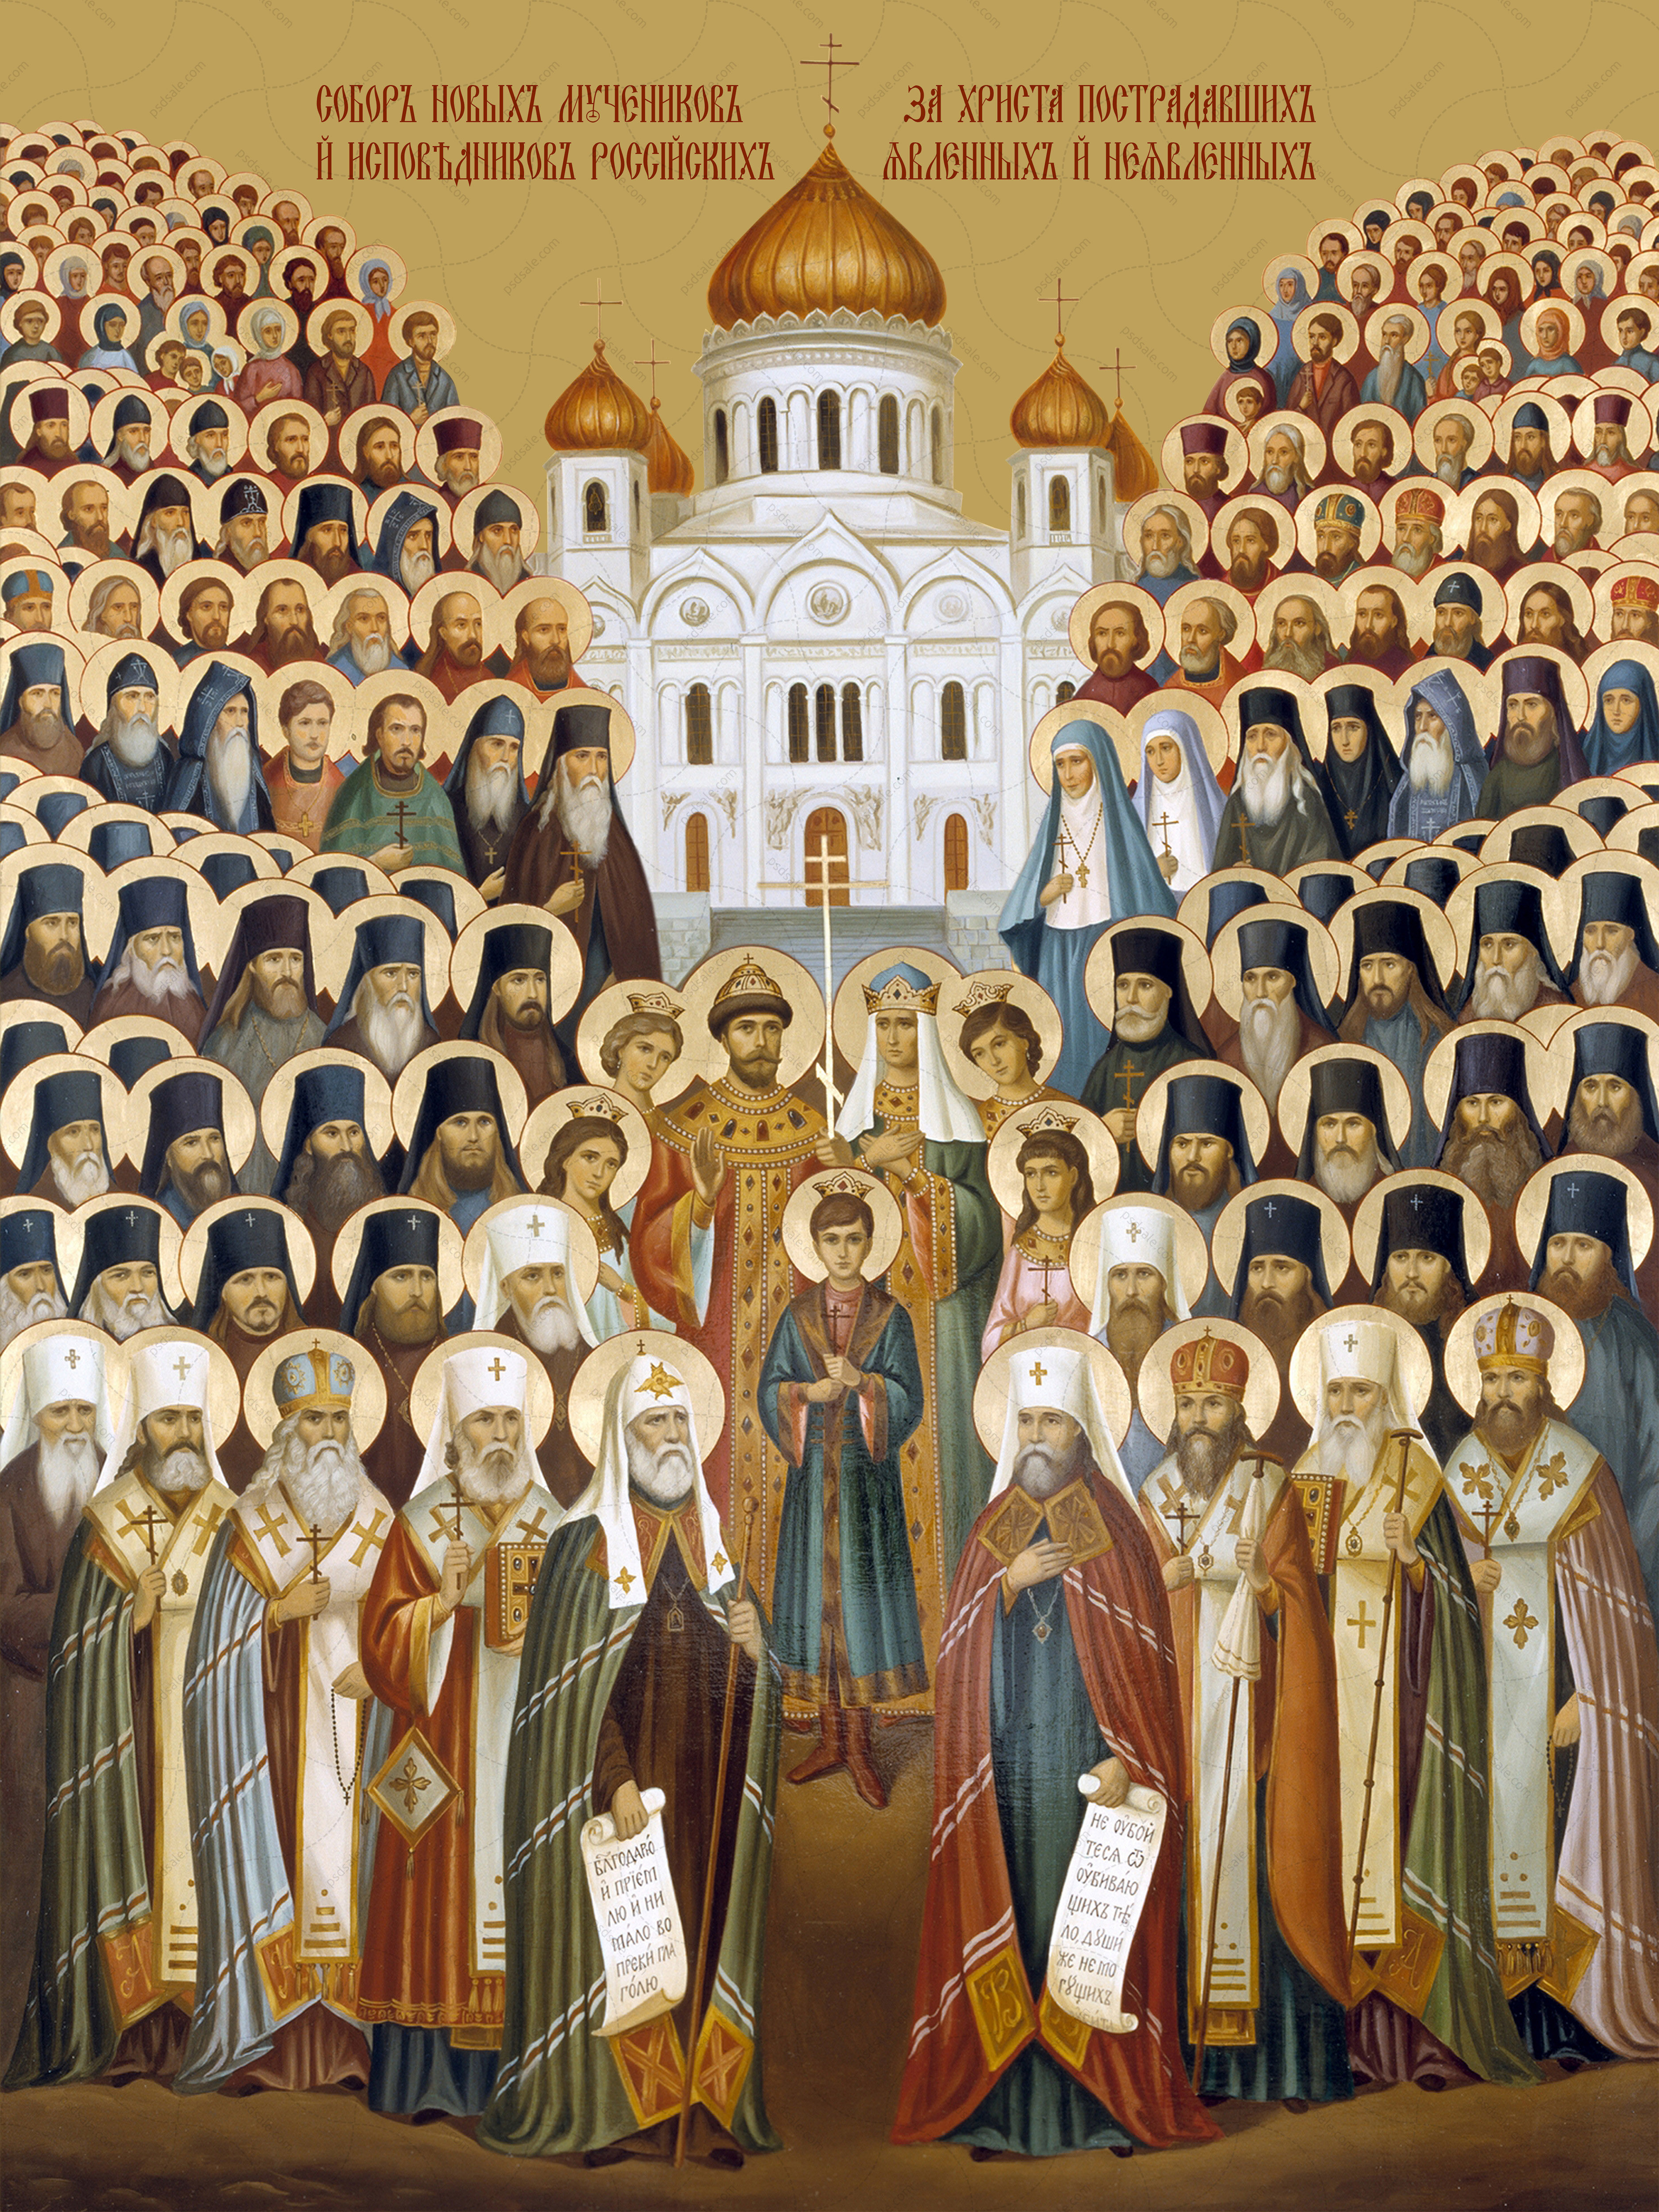 Мученики святой церкви. Икона собора новомучеников и исповедников российских 20 века.